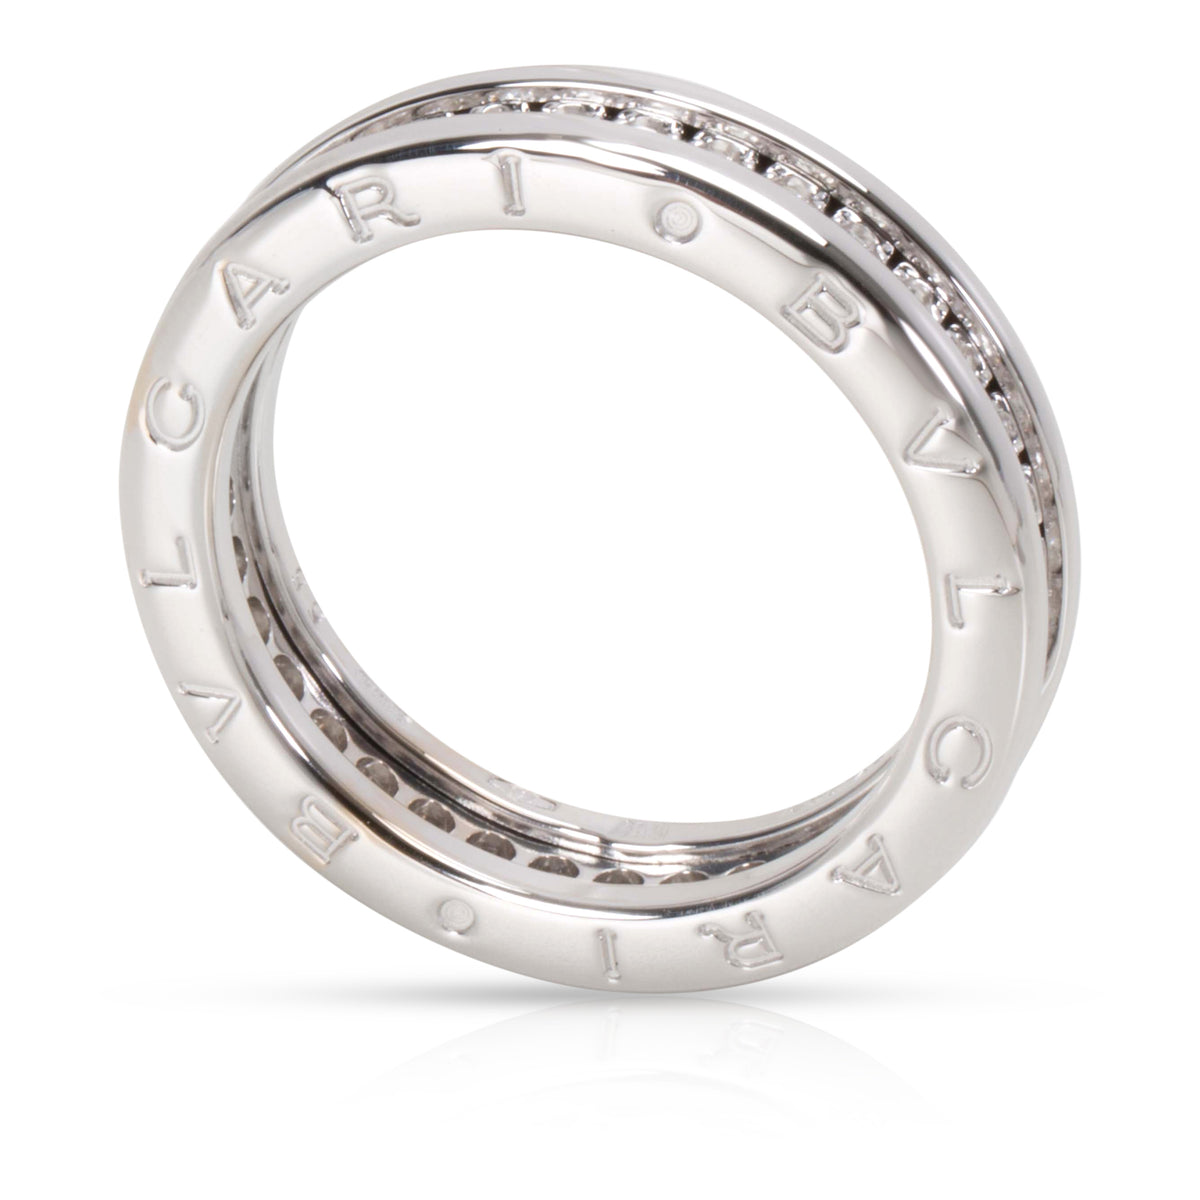 Bvlgari B. Zero1 One Band Diamond Ring in 18K White Gold